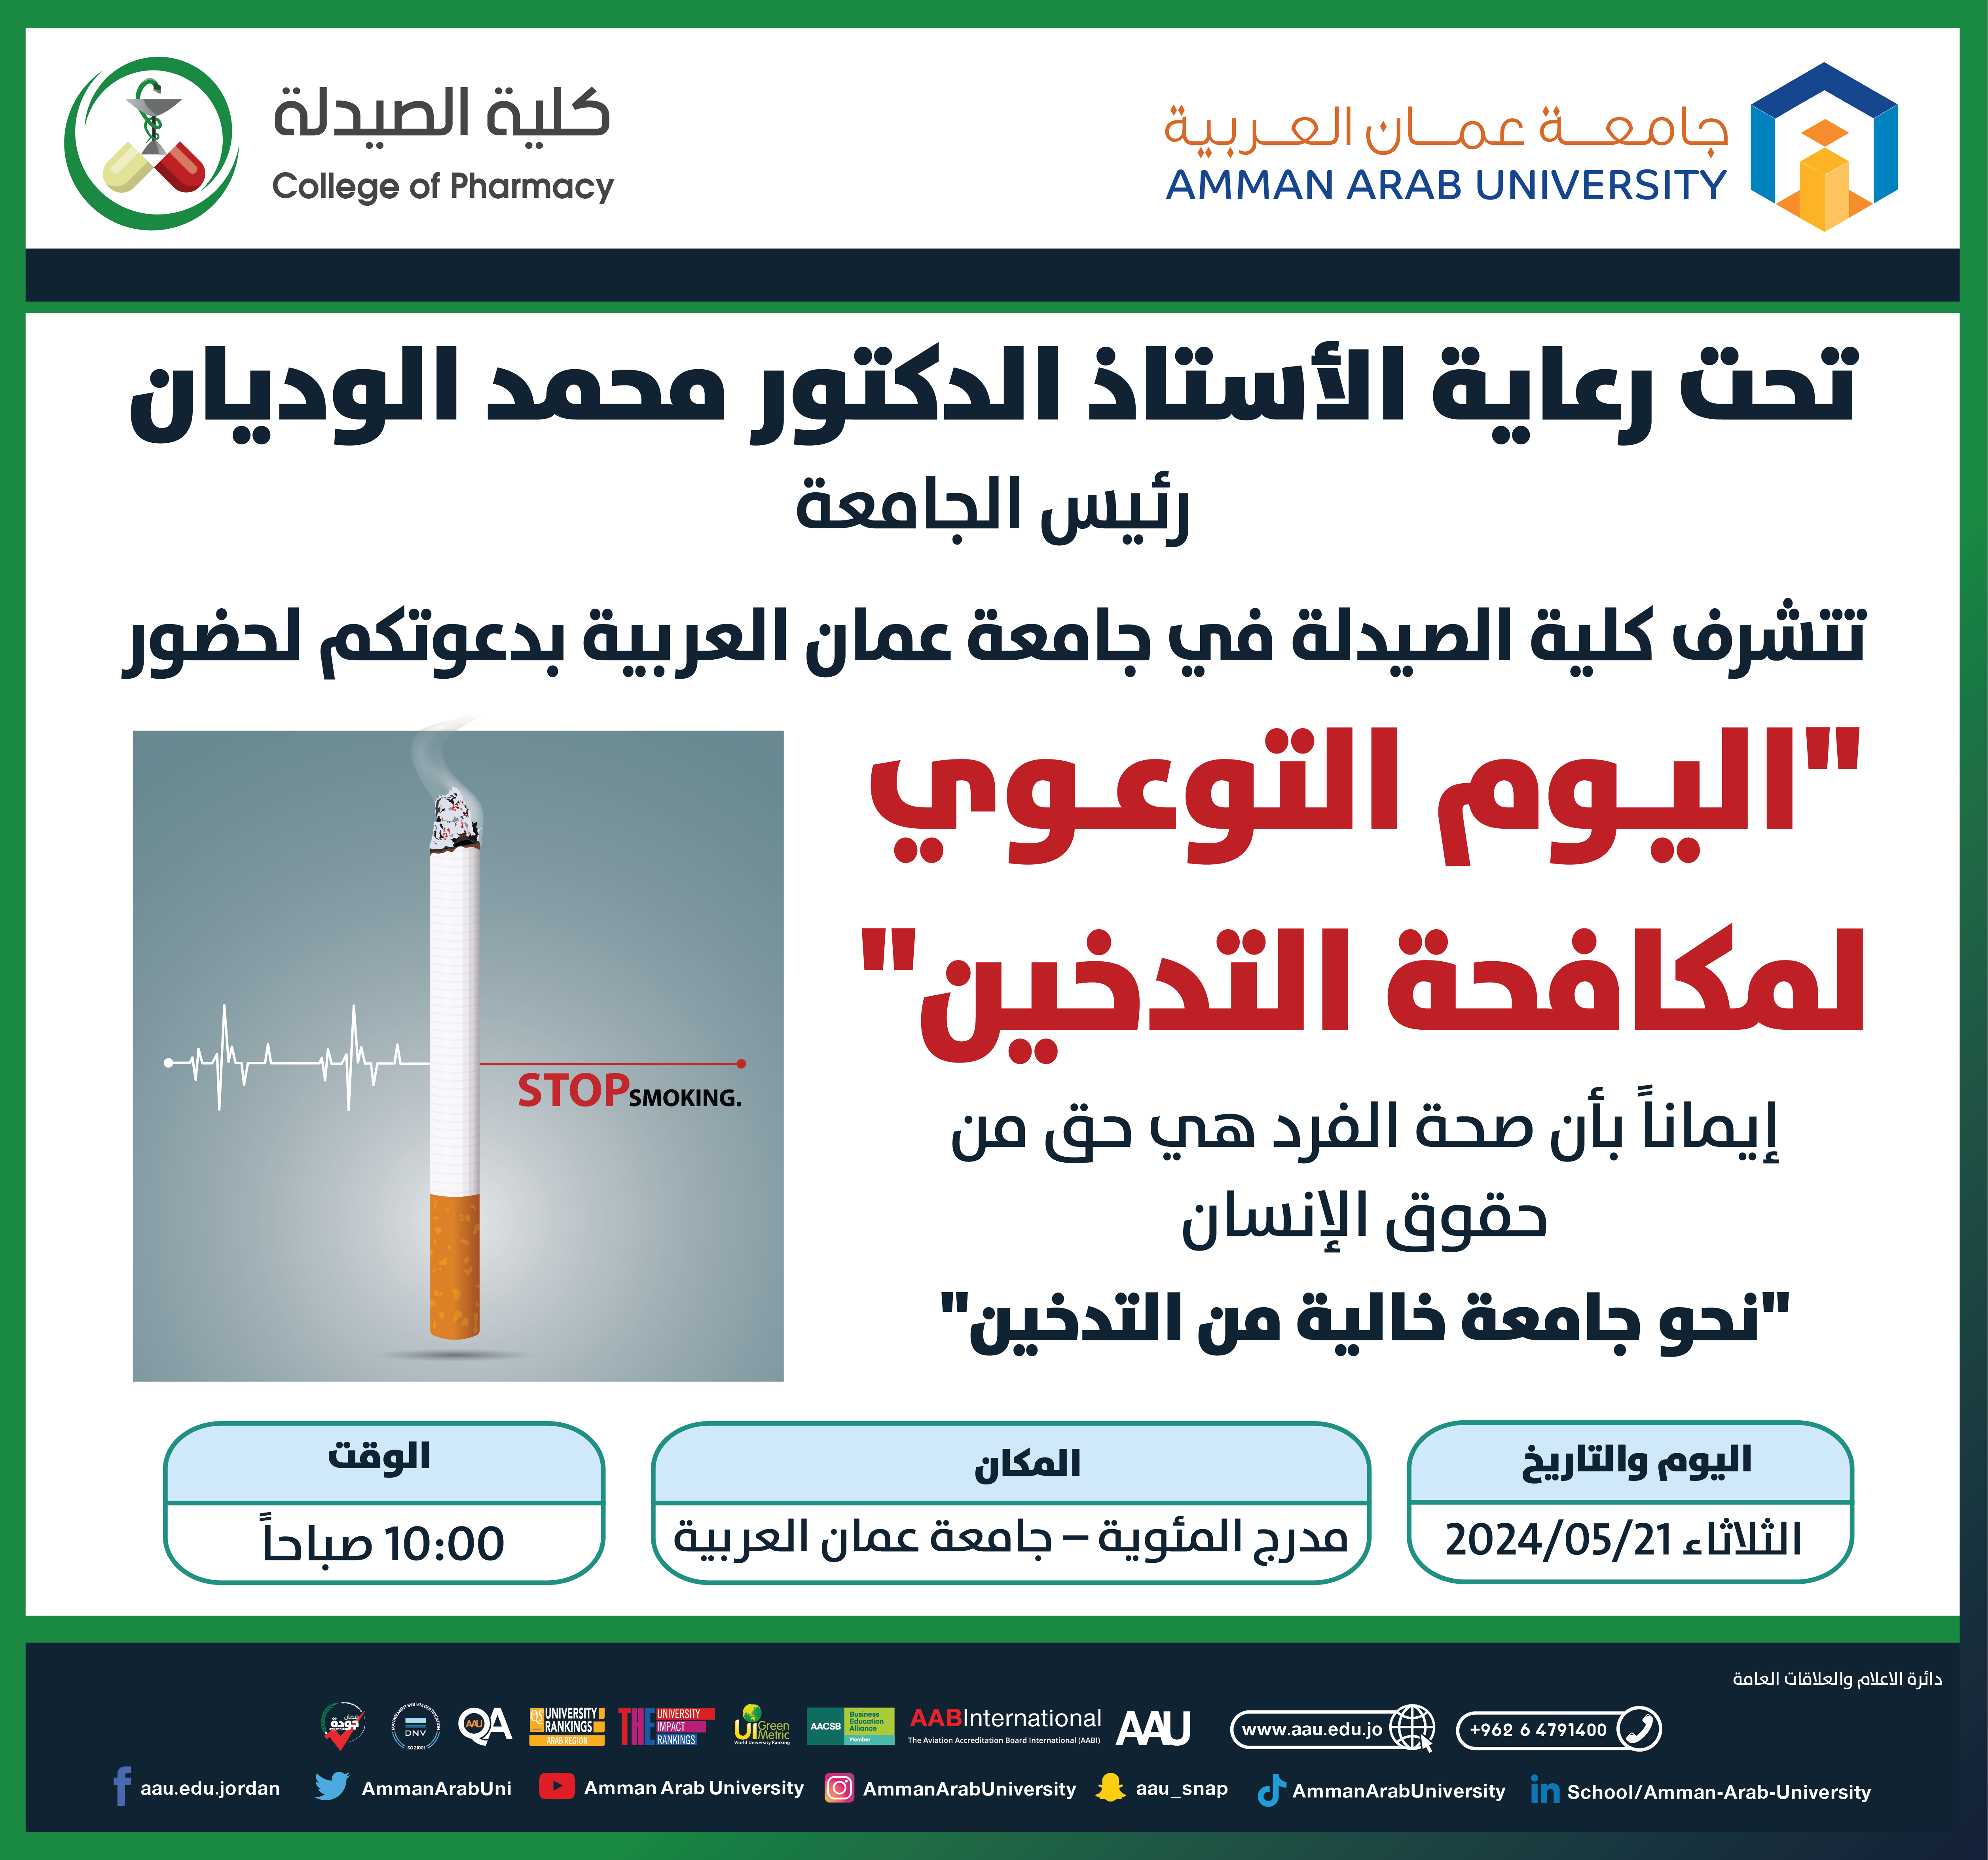 دعوة لحضور فعالية اليوم التوعوي لمكافحة التدخين